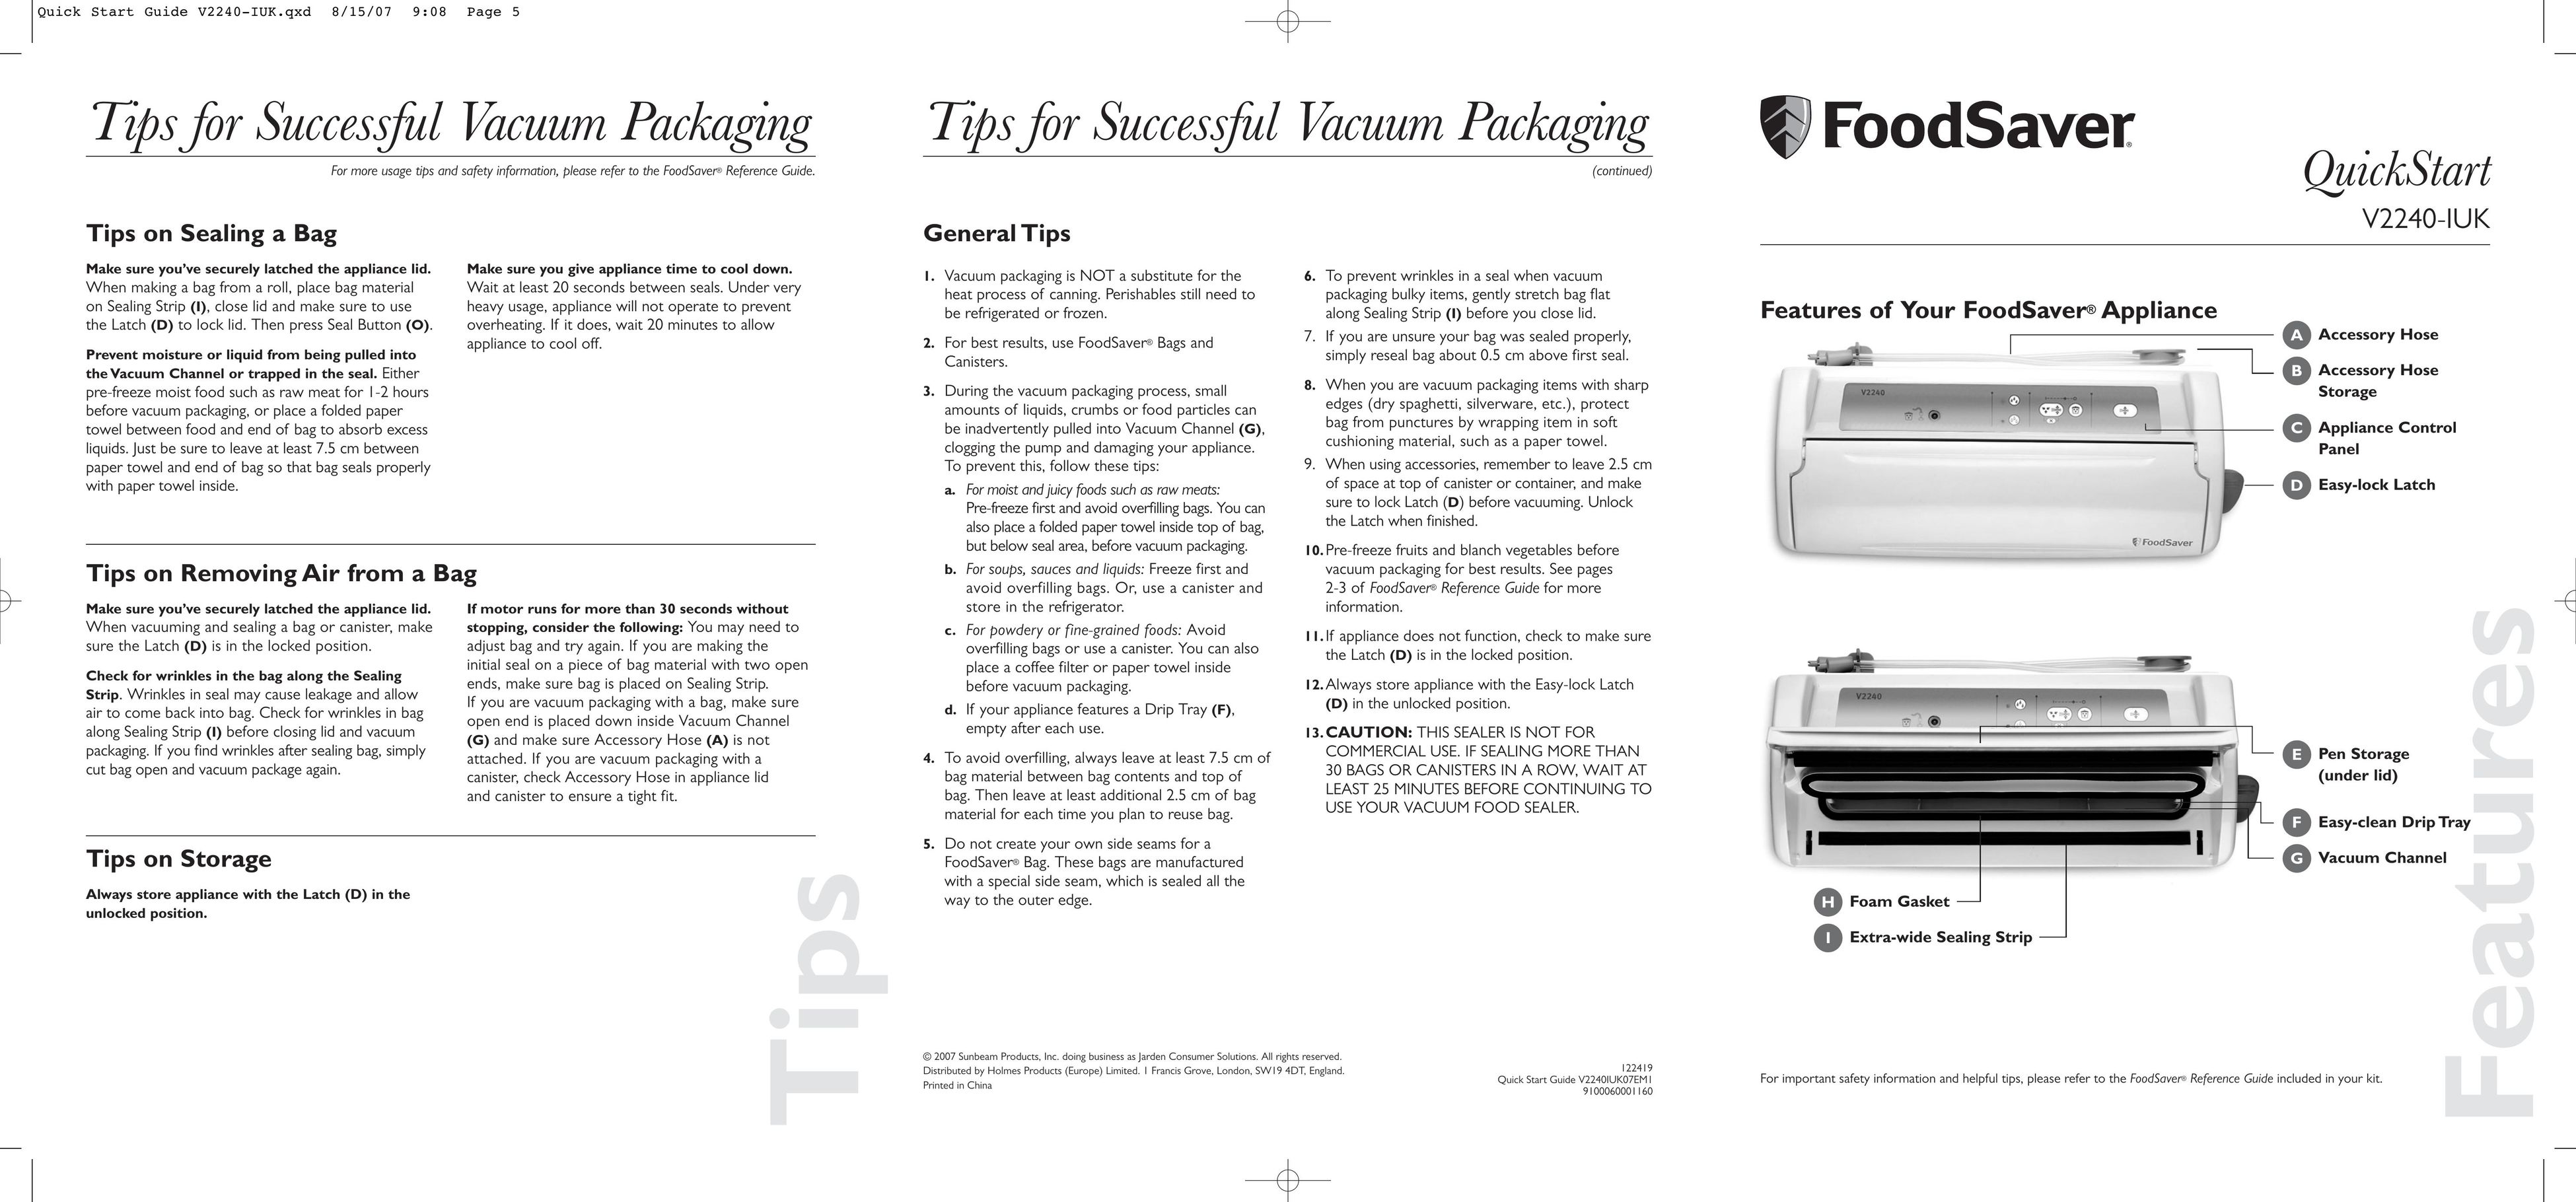 FoodSaver V2240-IUK Food Saver User Manual